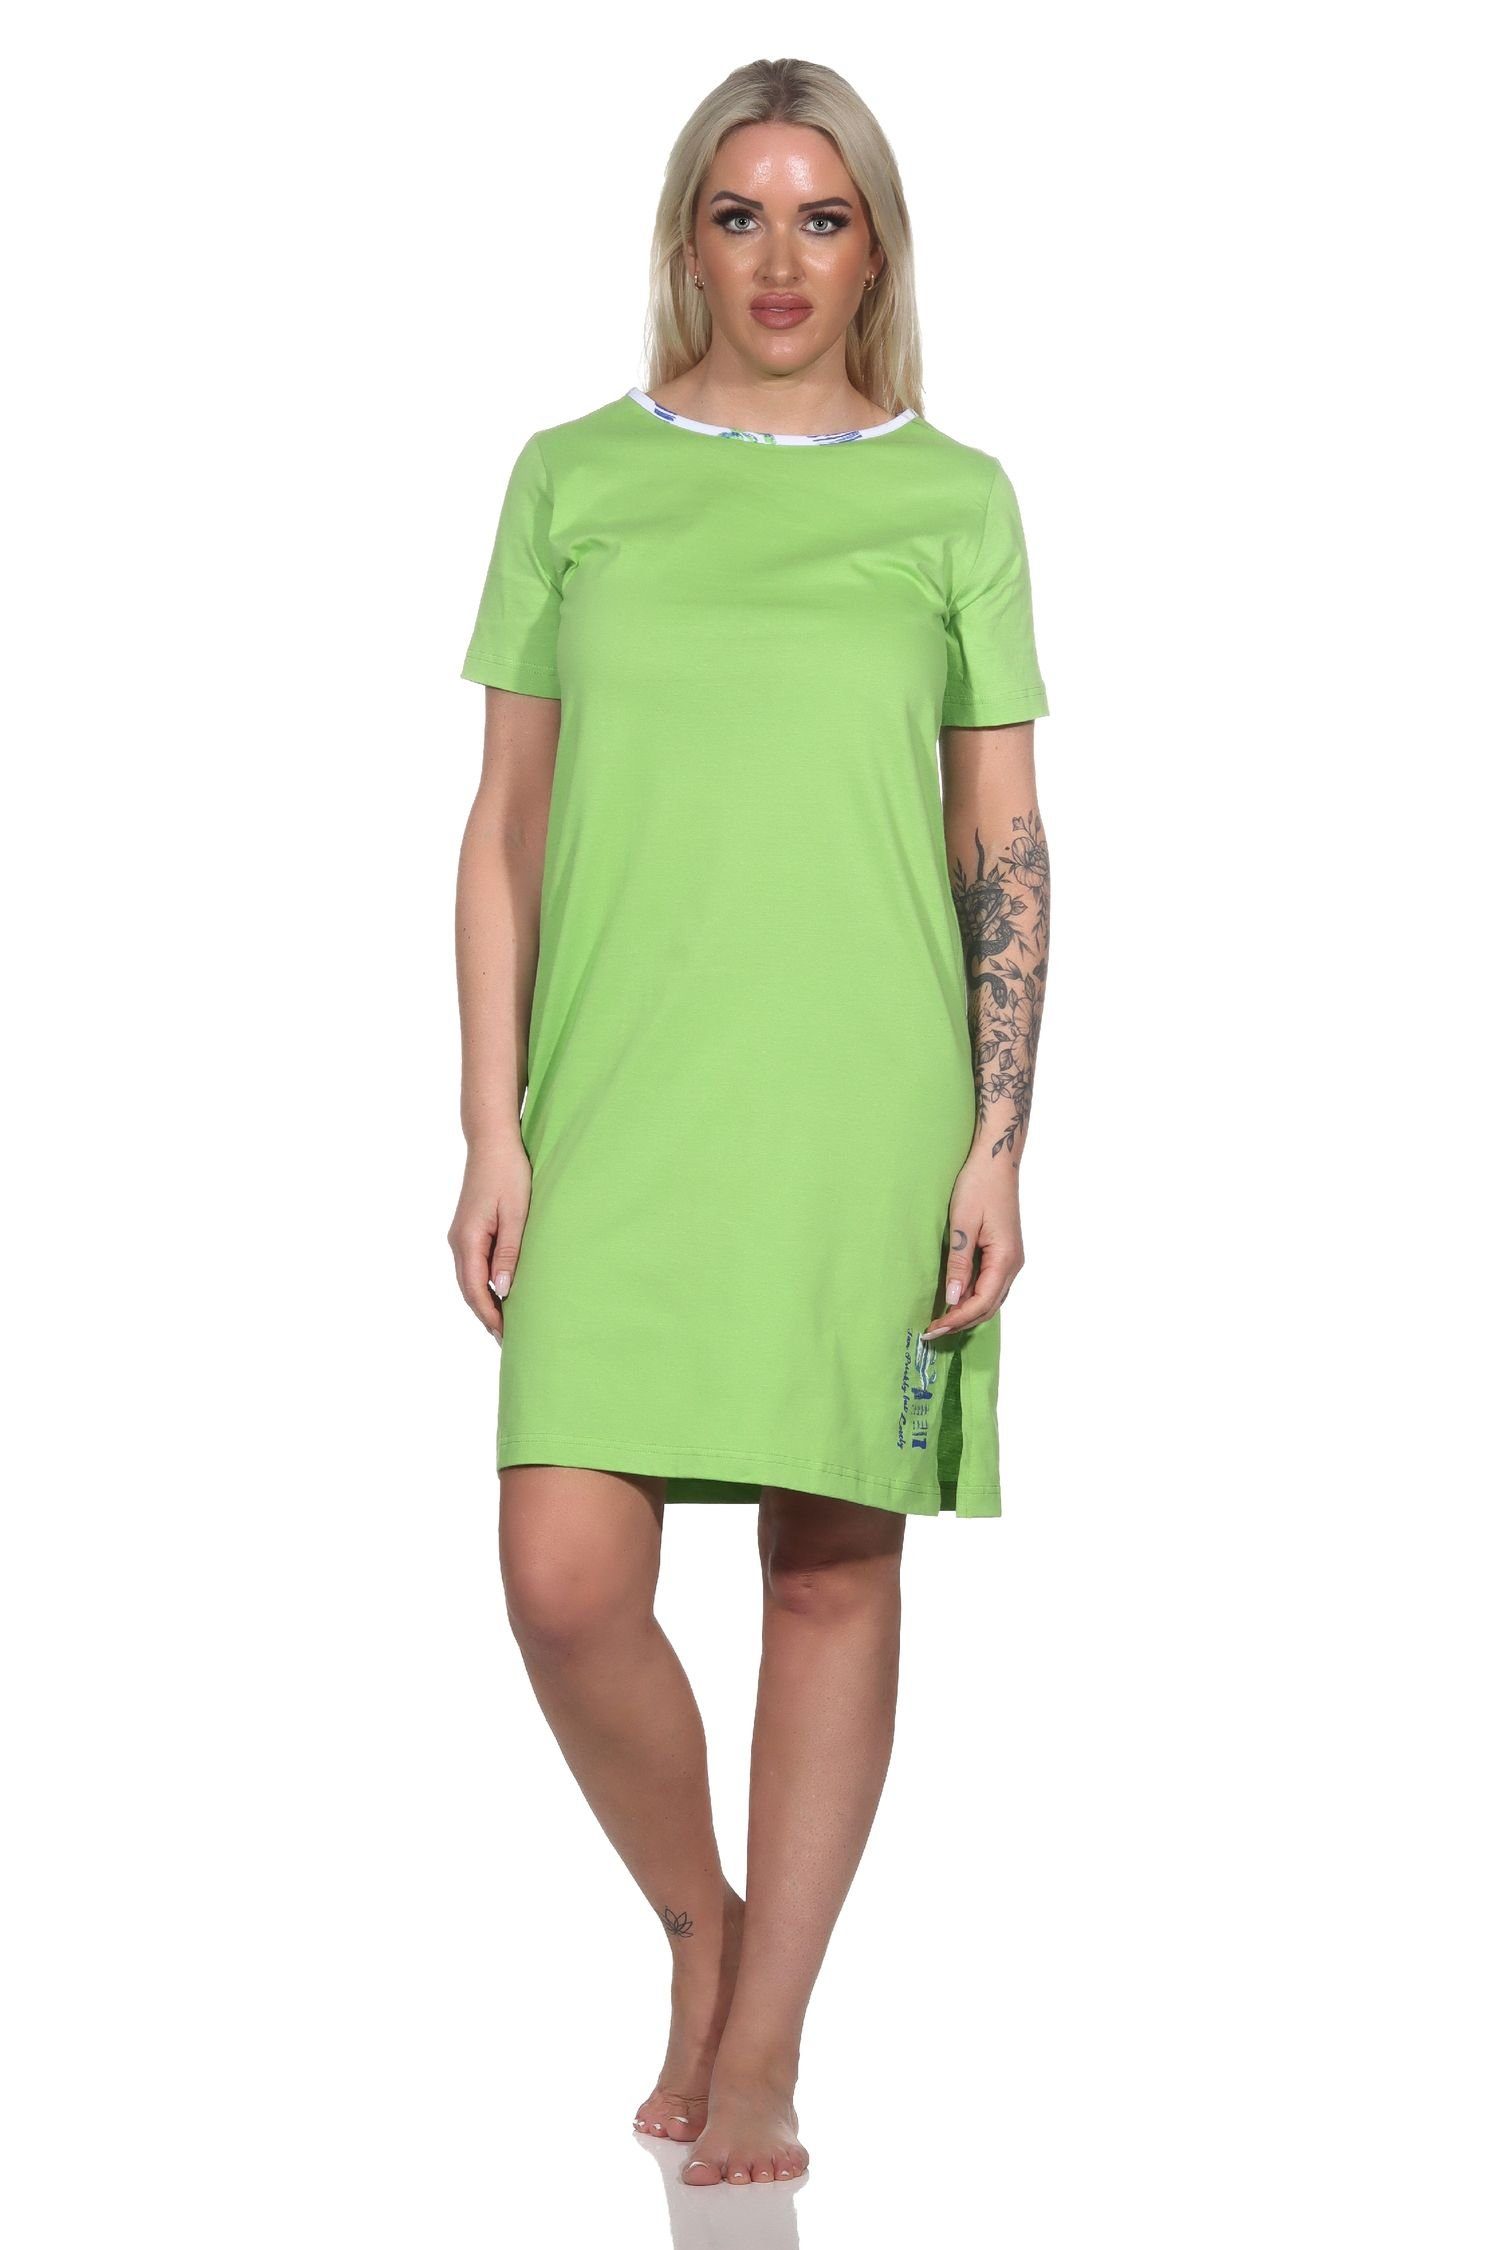 Normann Nachthemd Damen kurzarm Nachthemd mit Kaktus als Motiv grün